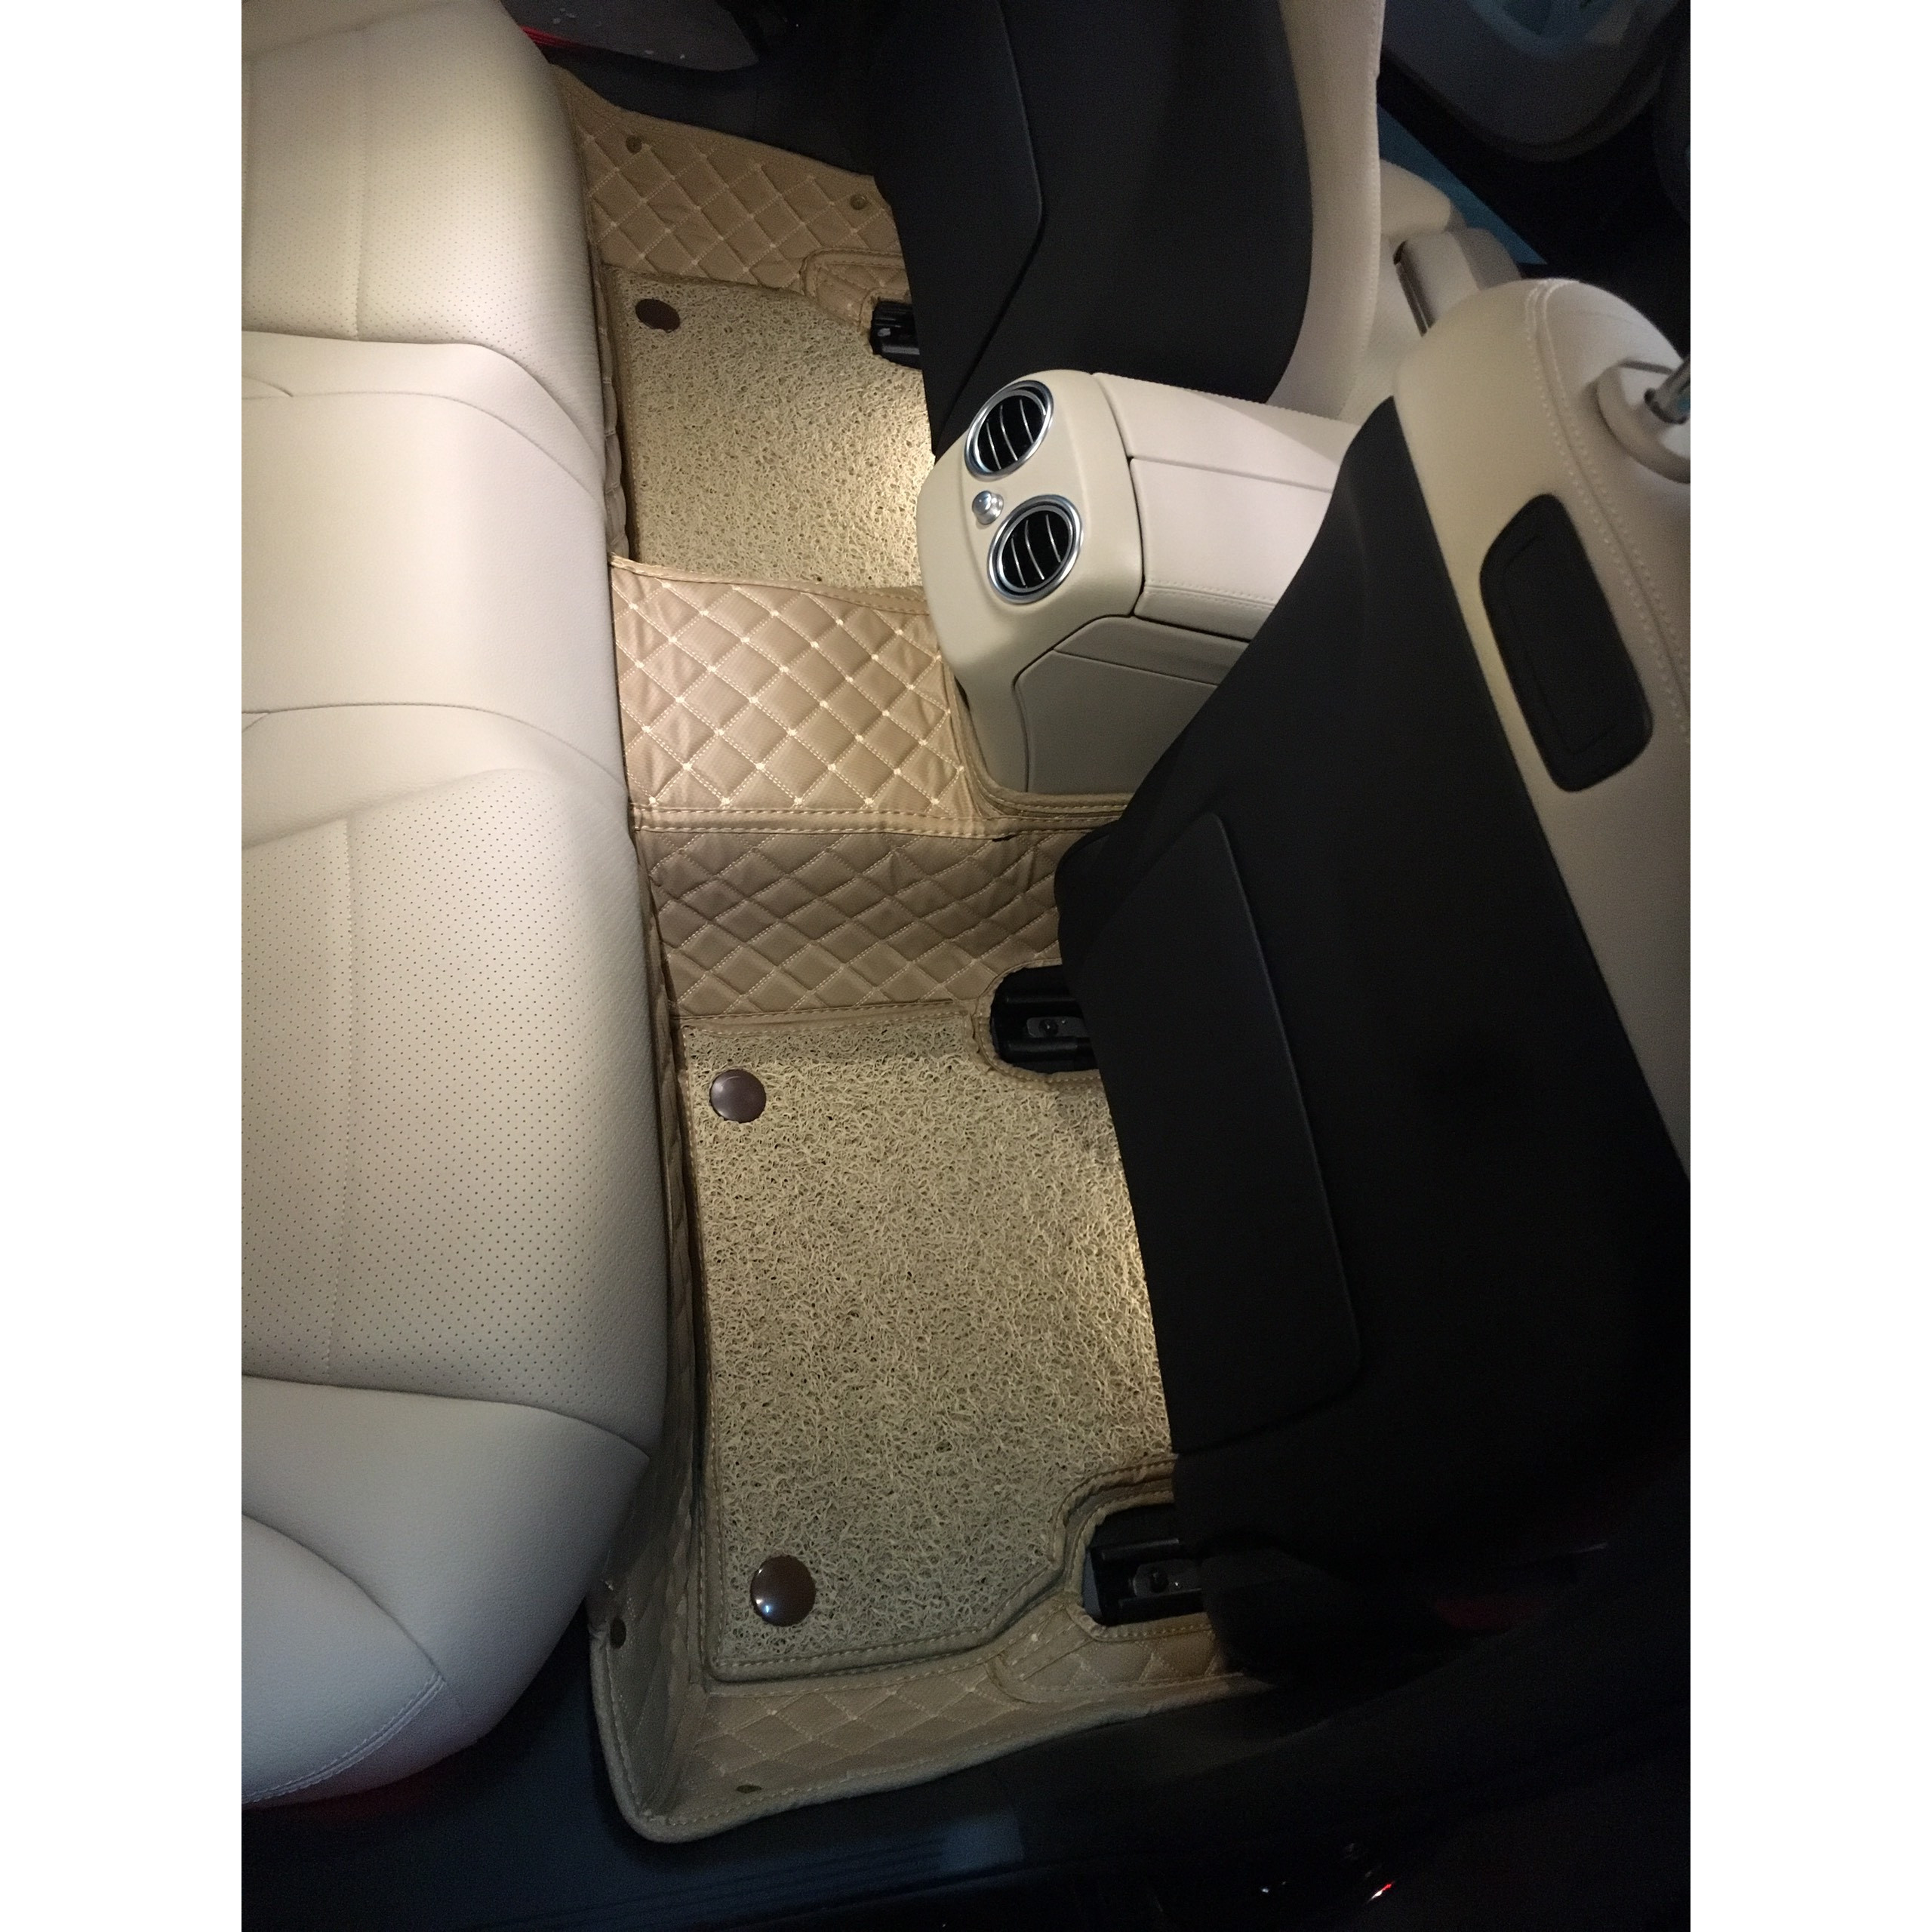 Thảm sàn ô tô 6D dành cho xe Mec c200 2019 da Carbon màu C2.6 + R6 hình ảnh thật chụp bằng điện thoại không chỉnh sửa có video hướng dẫn lắp đặt tại nhà